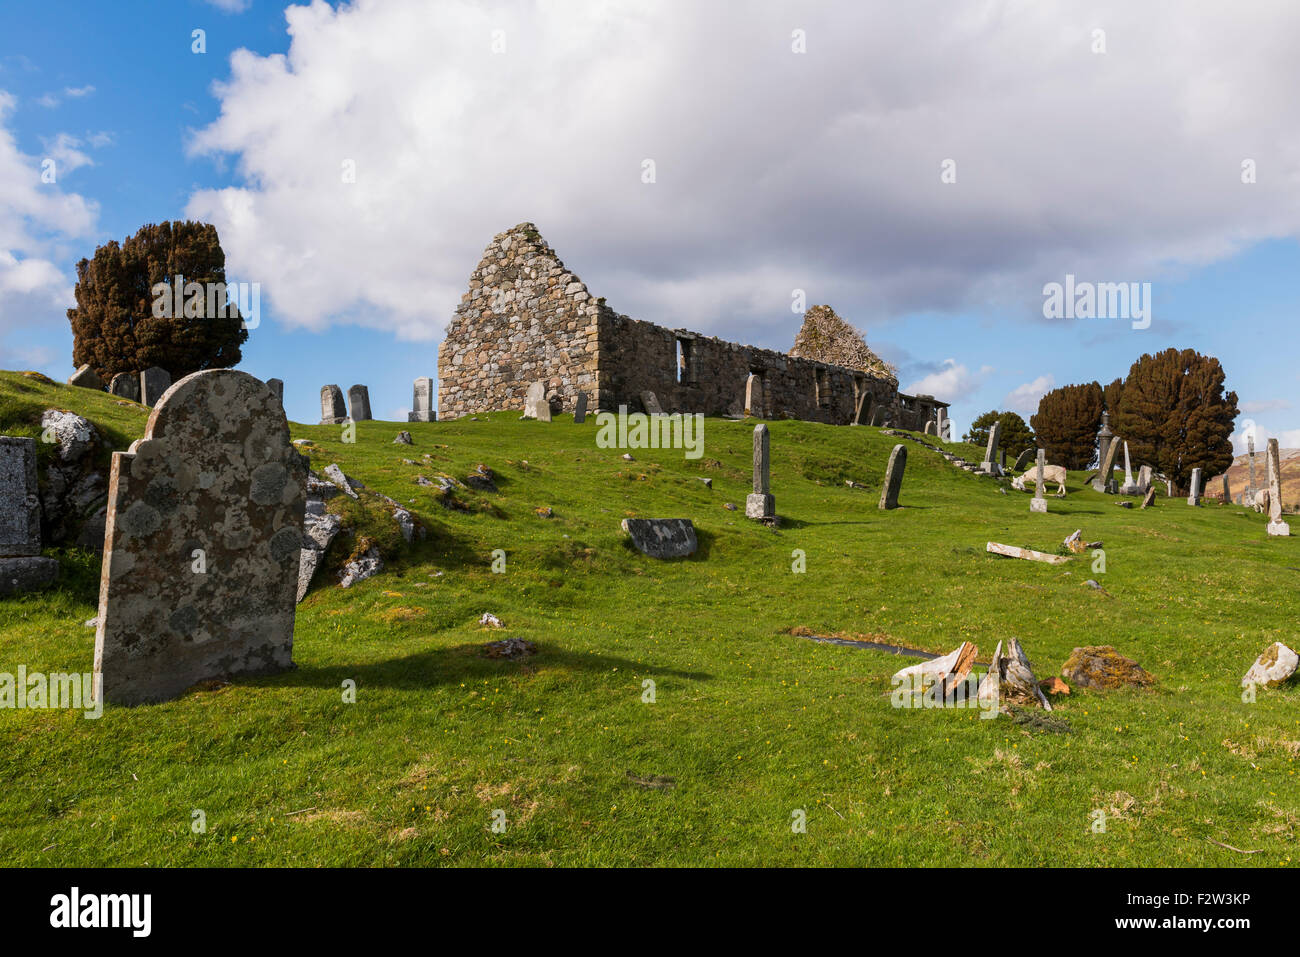 Cimitero sull'Isola di Skye nelle Highlands della Scozia con il lago, neve e pile di pietra. Foto Stock